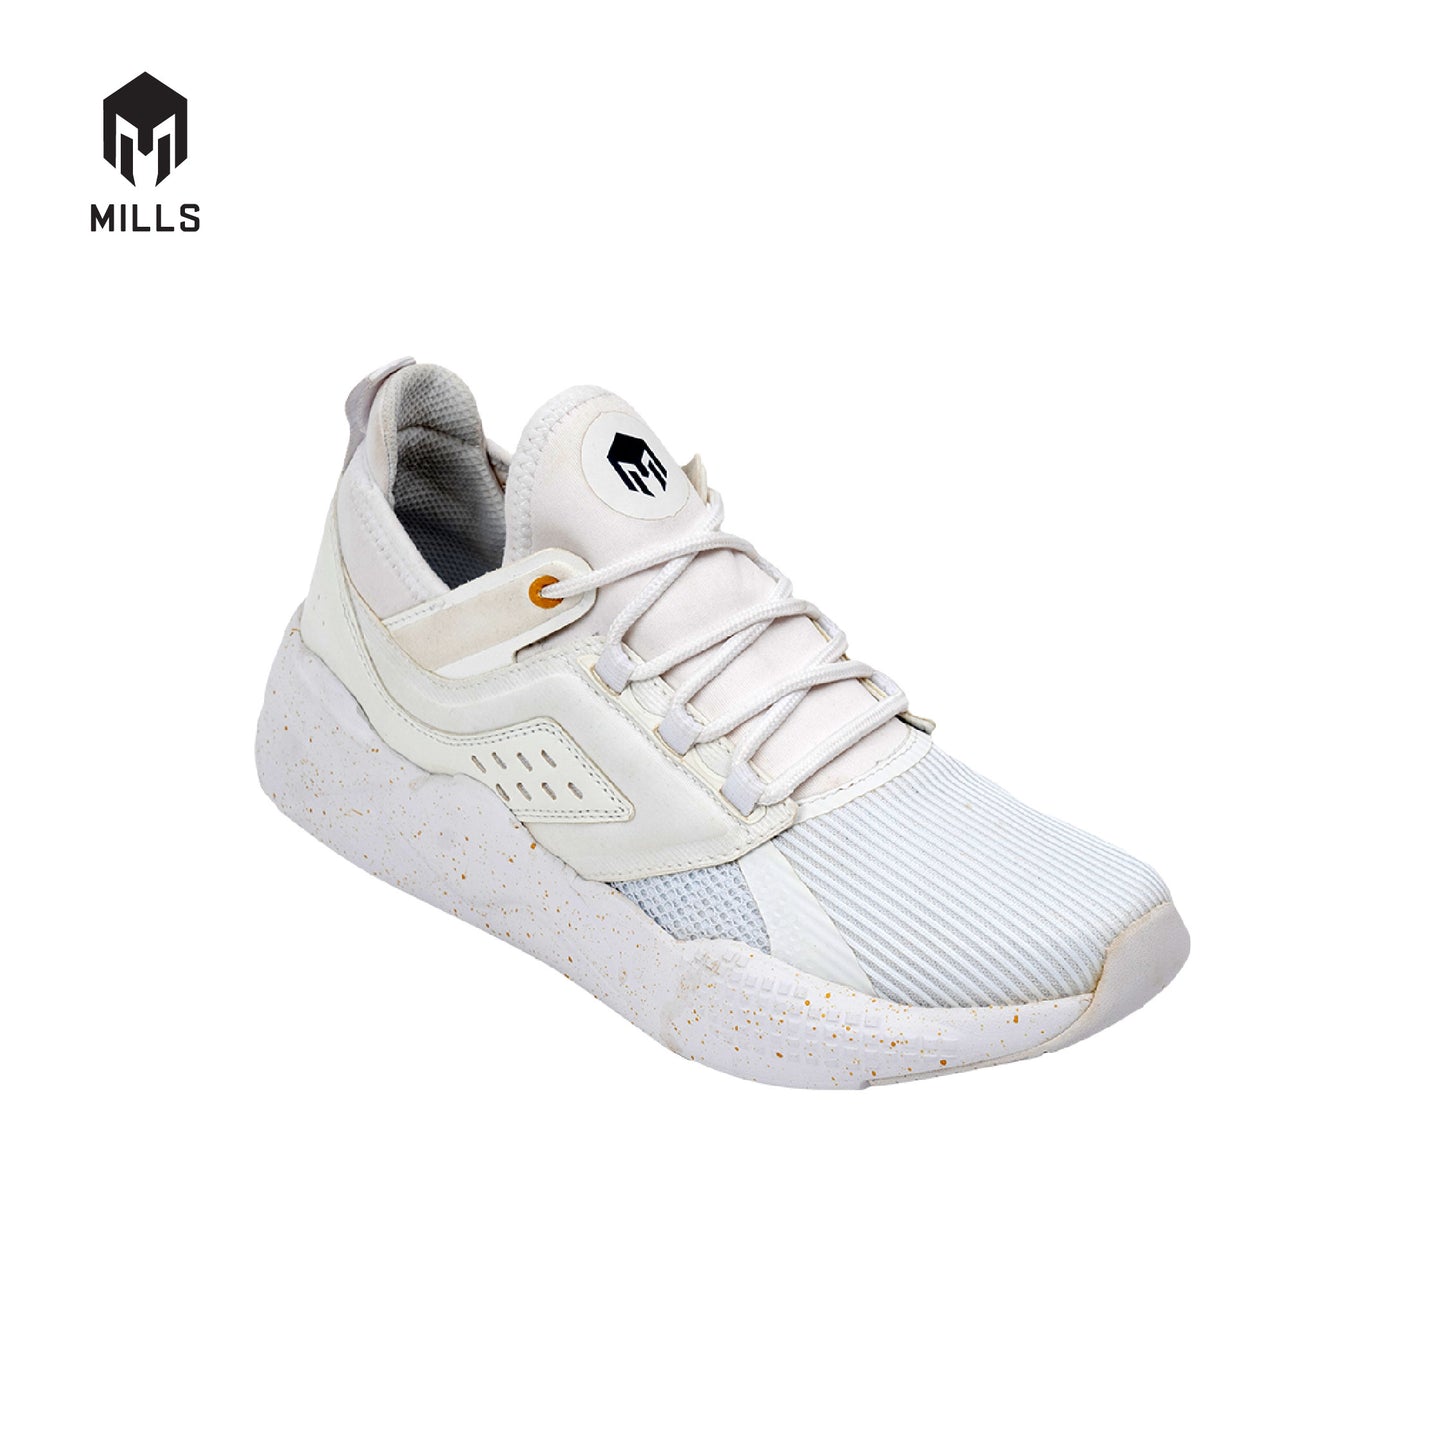 MILLS Sepatu Revolt Beta White / White 9700903